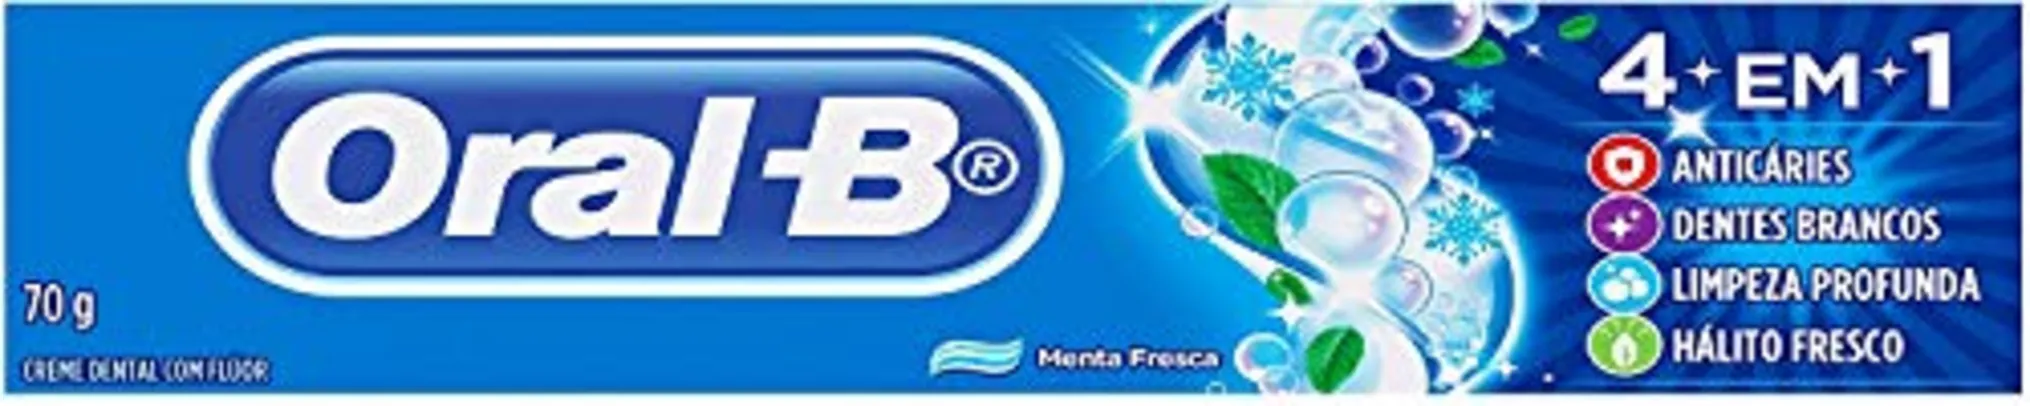 Creme Dental Oral-B 70g - 210 Unidades | R$3